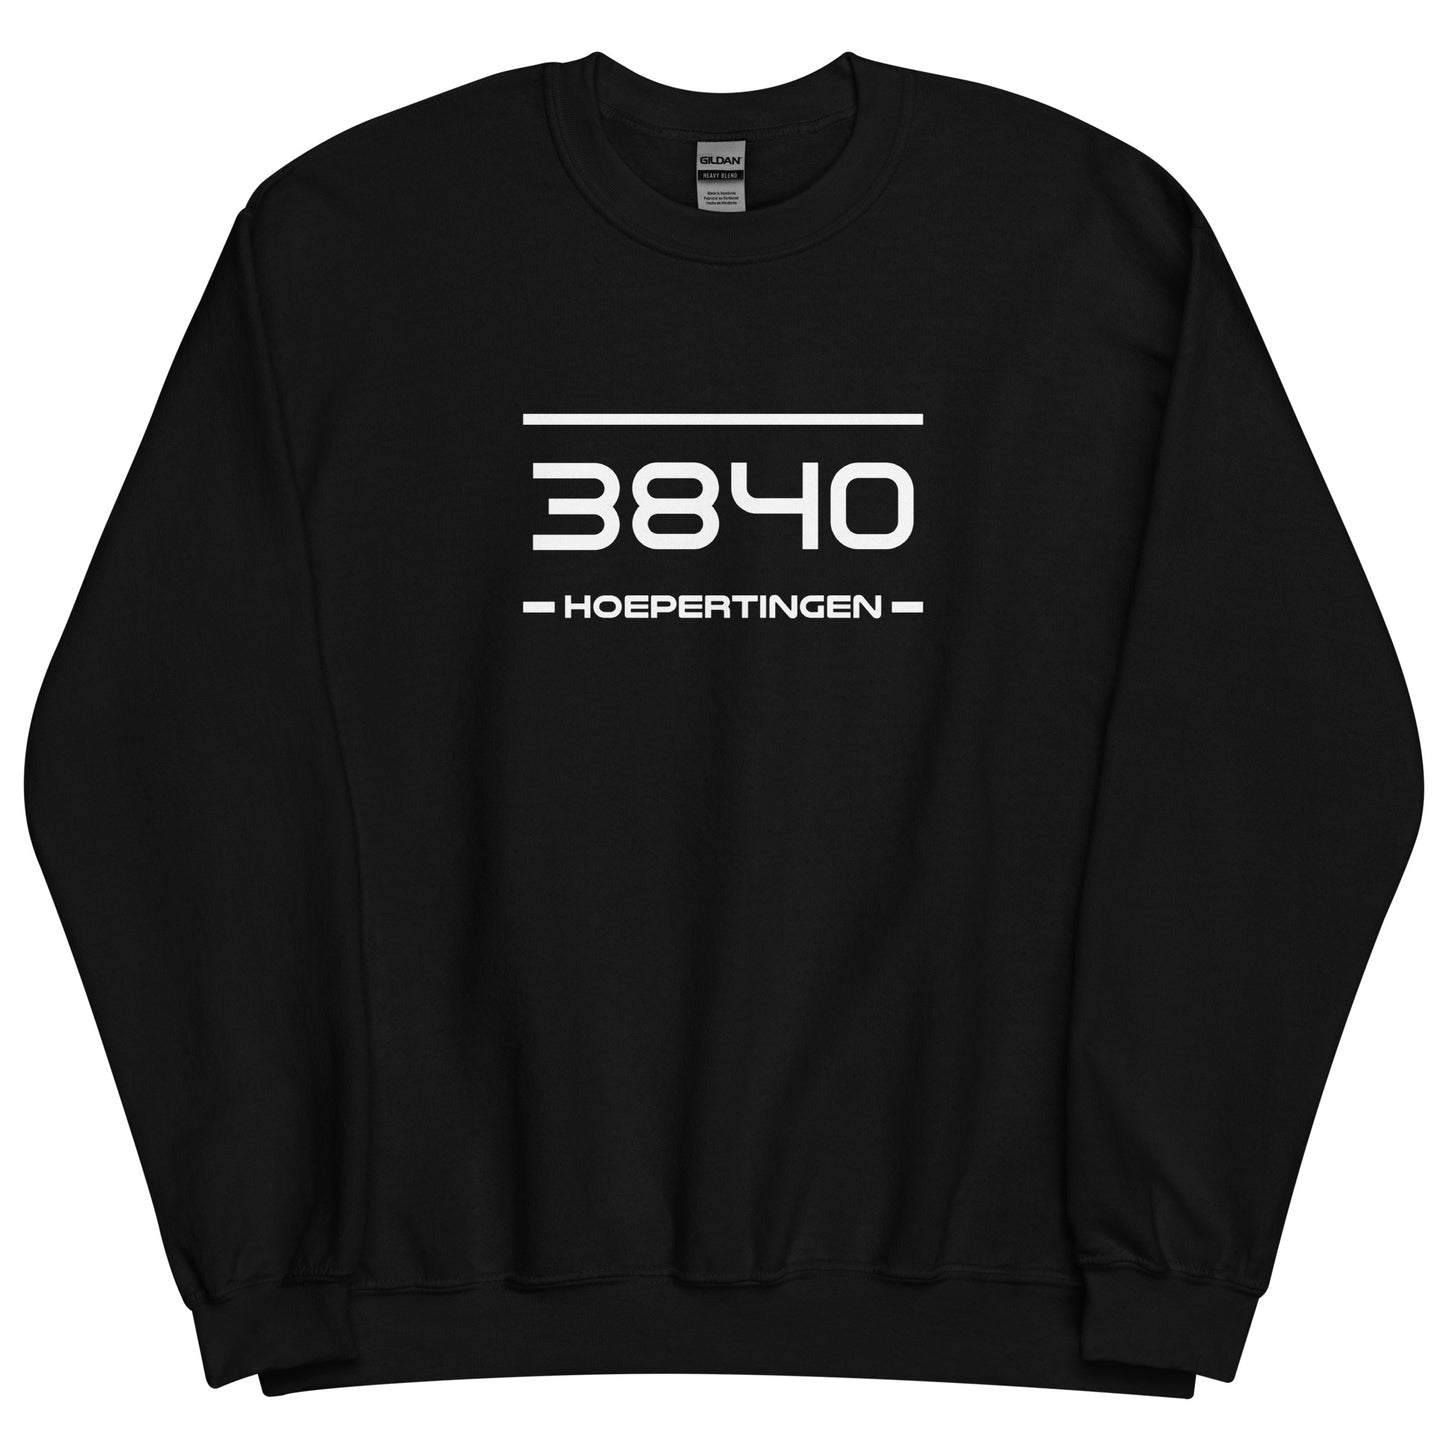 Sweater - 3840 - Hoepertingen (M/V)